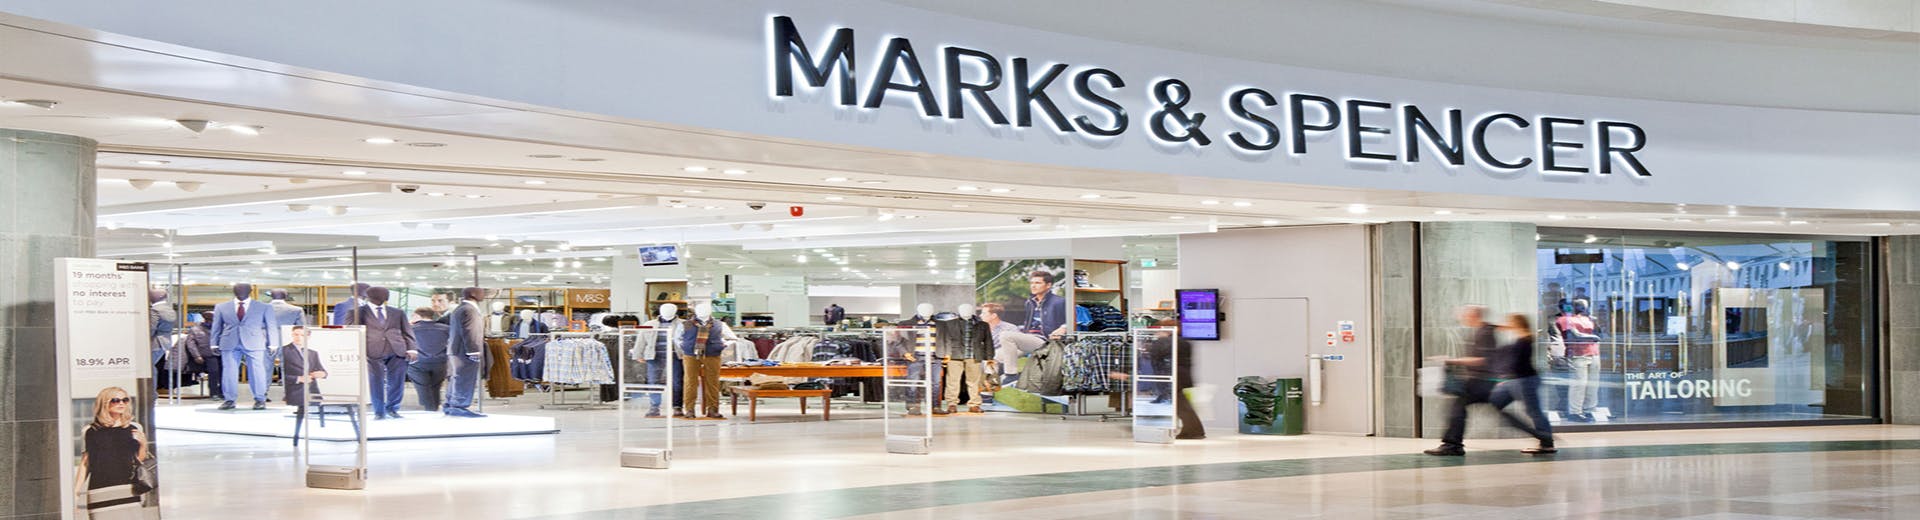 Marks & Spencer - Manifest SA